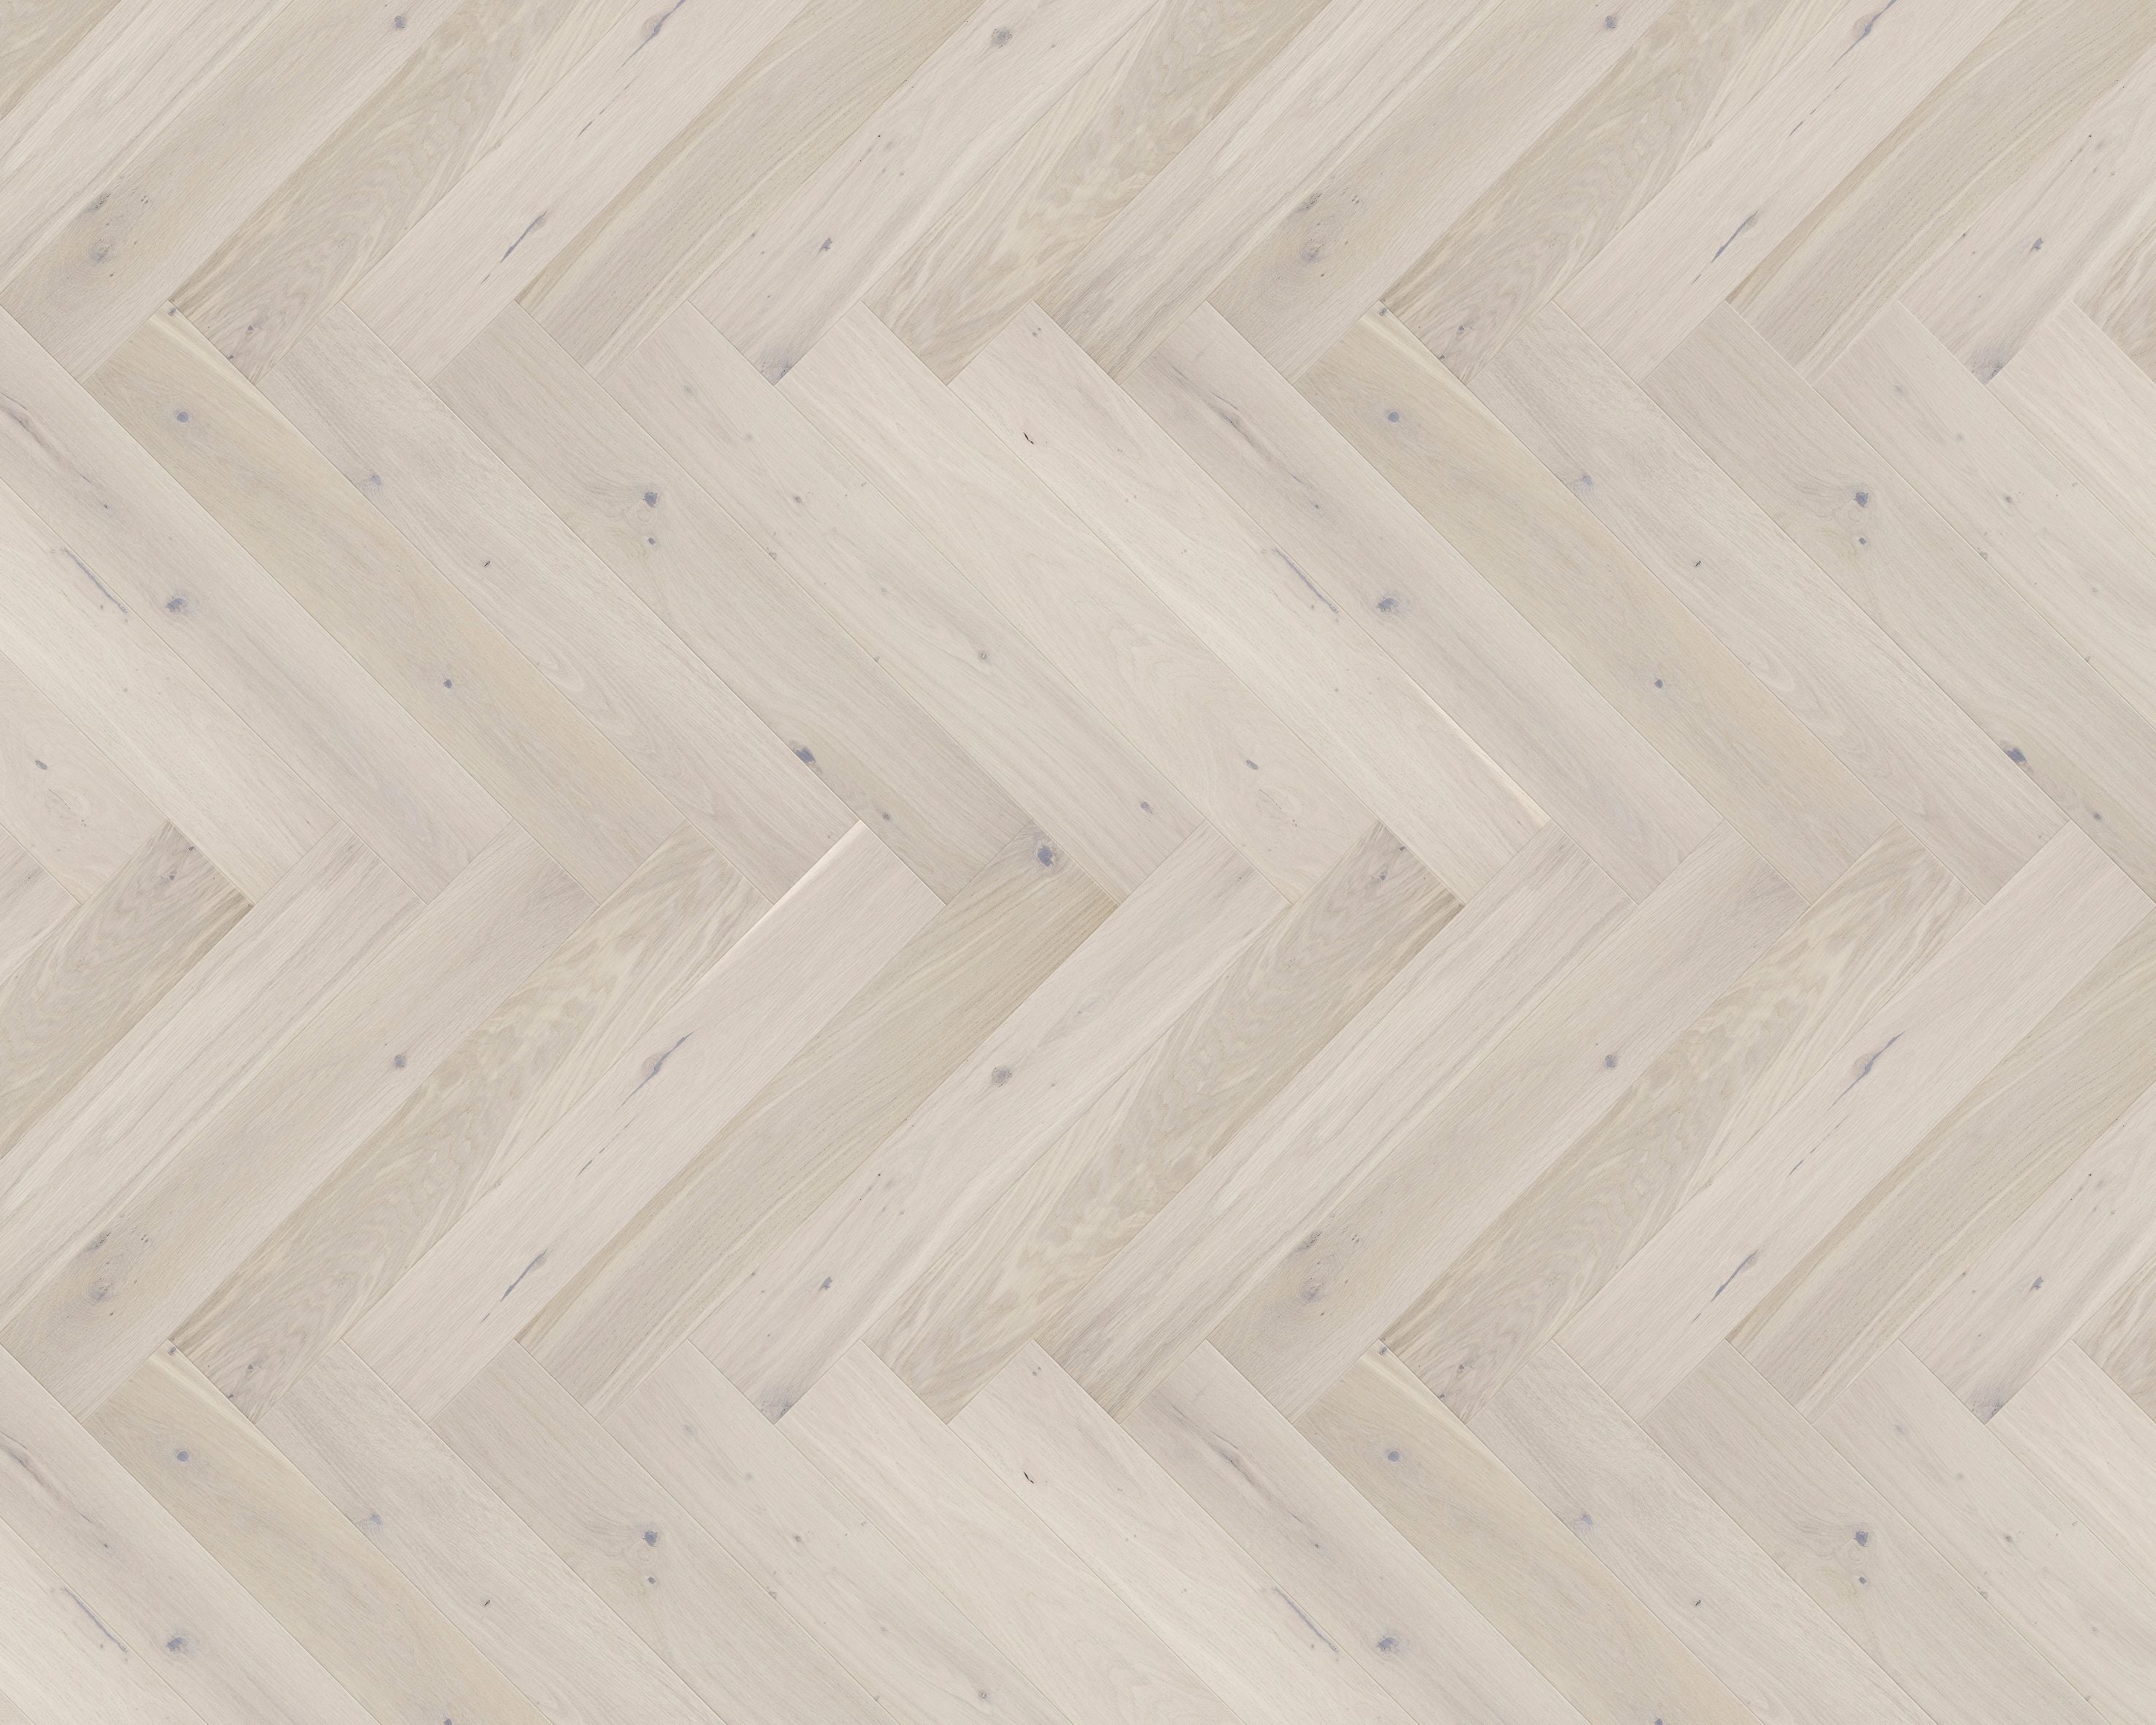 Light wood flooring laid in herringbone pattern